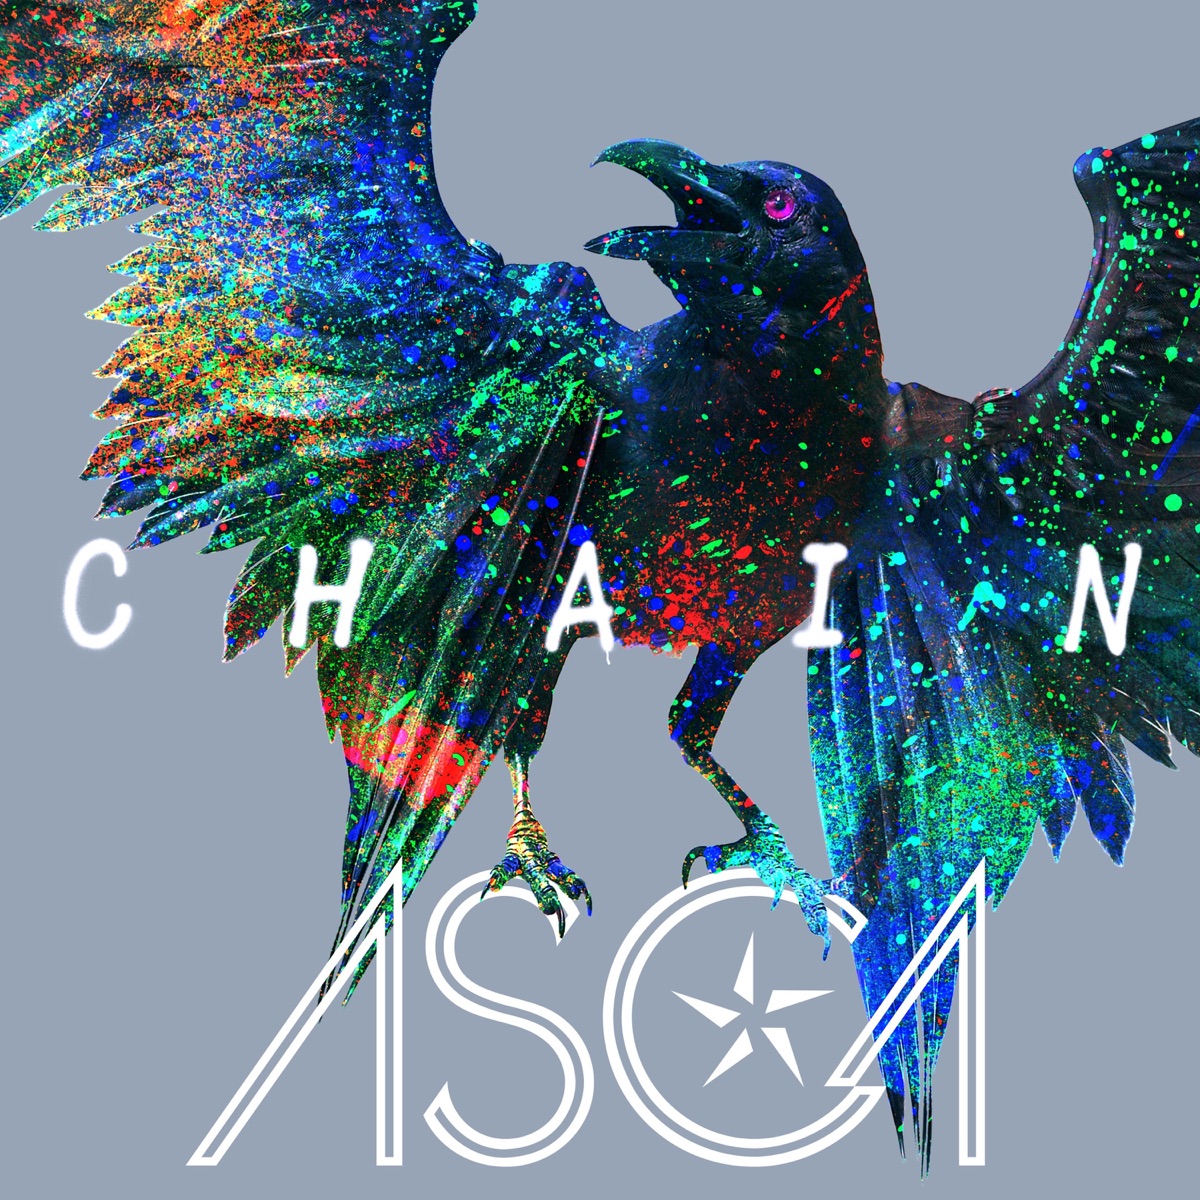 Cover for『ASCA - Ikareta Sekai Daro Kamawanai ze』from the release『CHAIN』